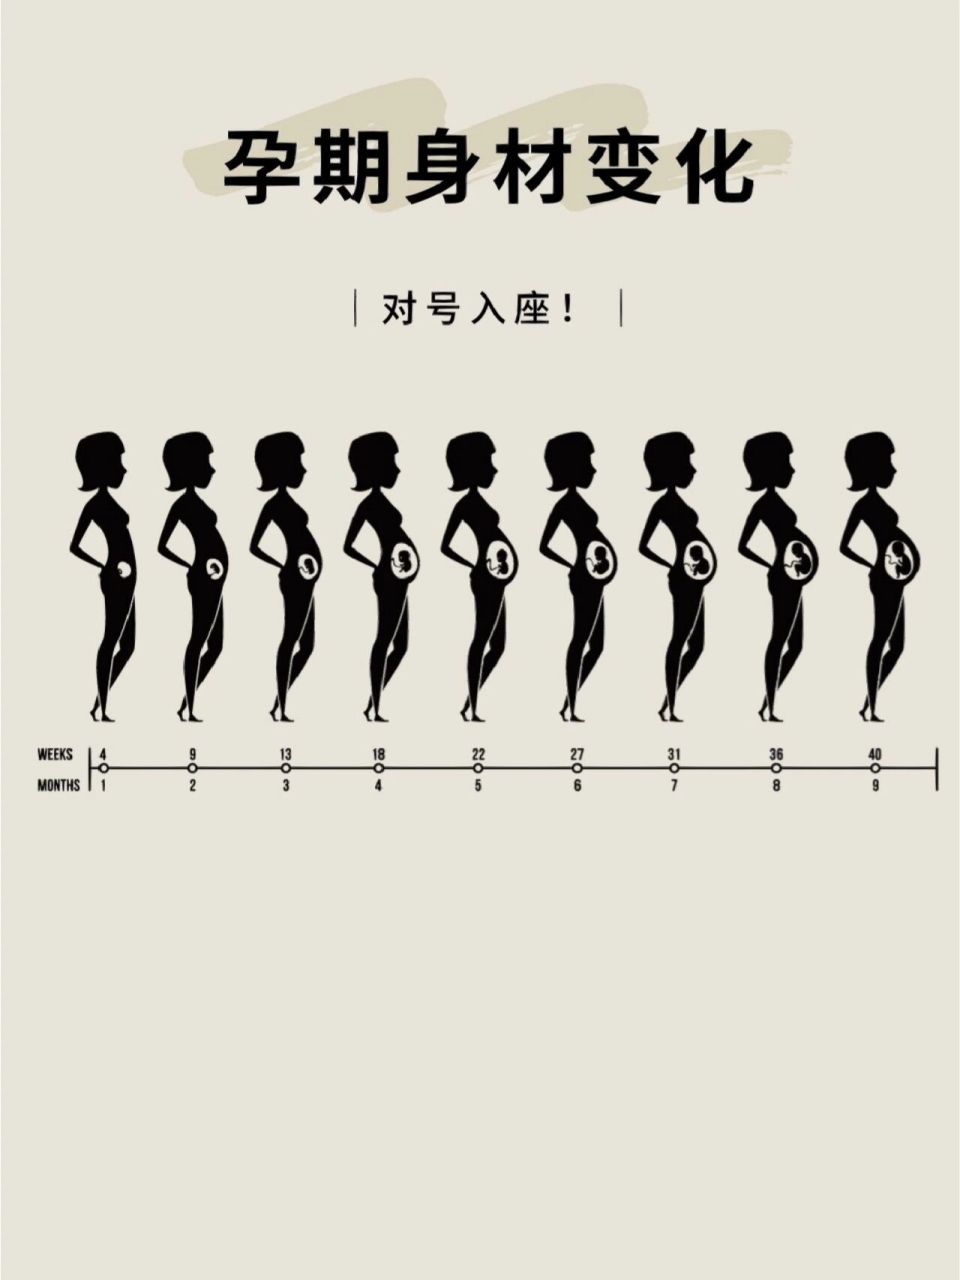 孕期肚子变化过程图图片